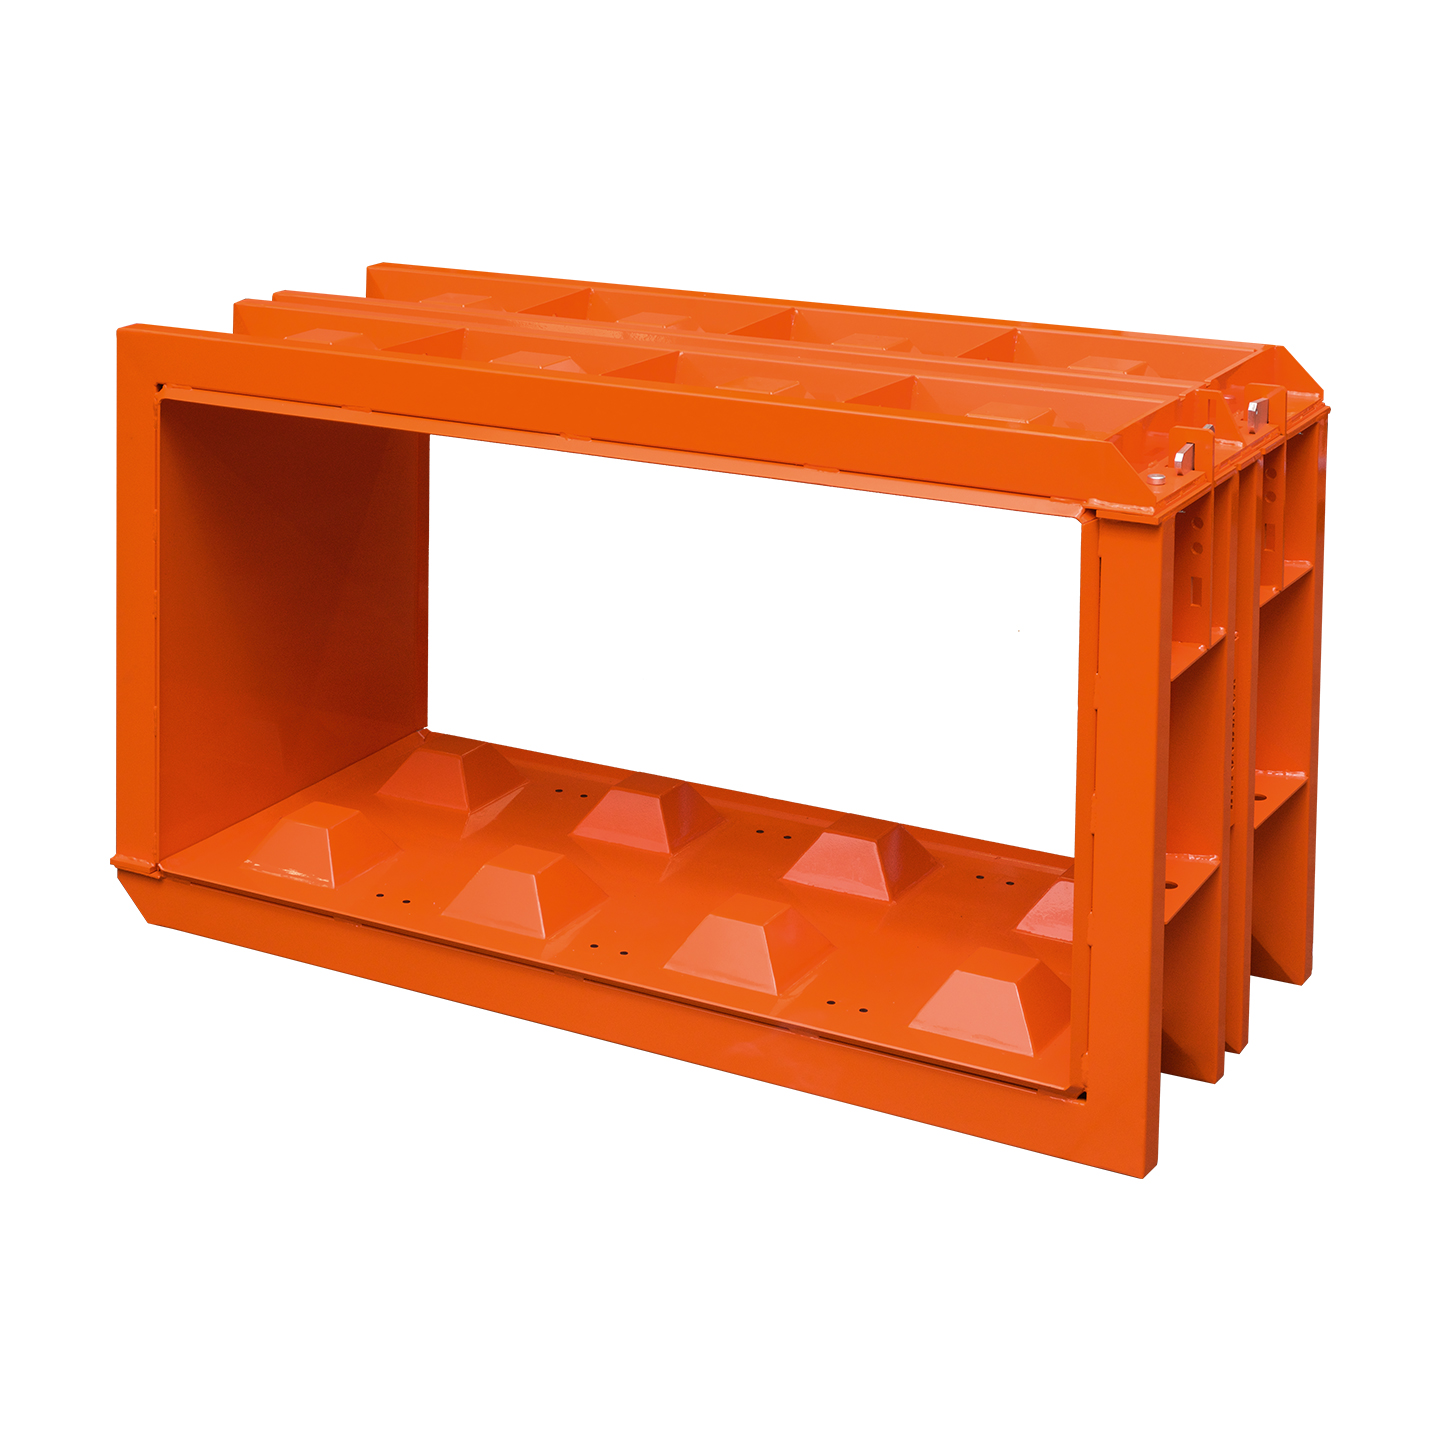 Stahlschalung für Betonblock in Orange, 160x80x80 cm